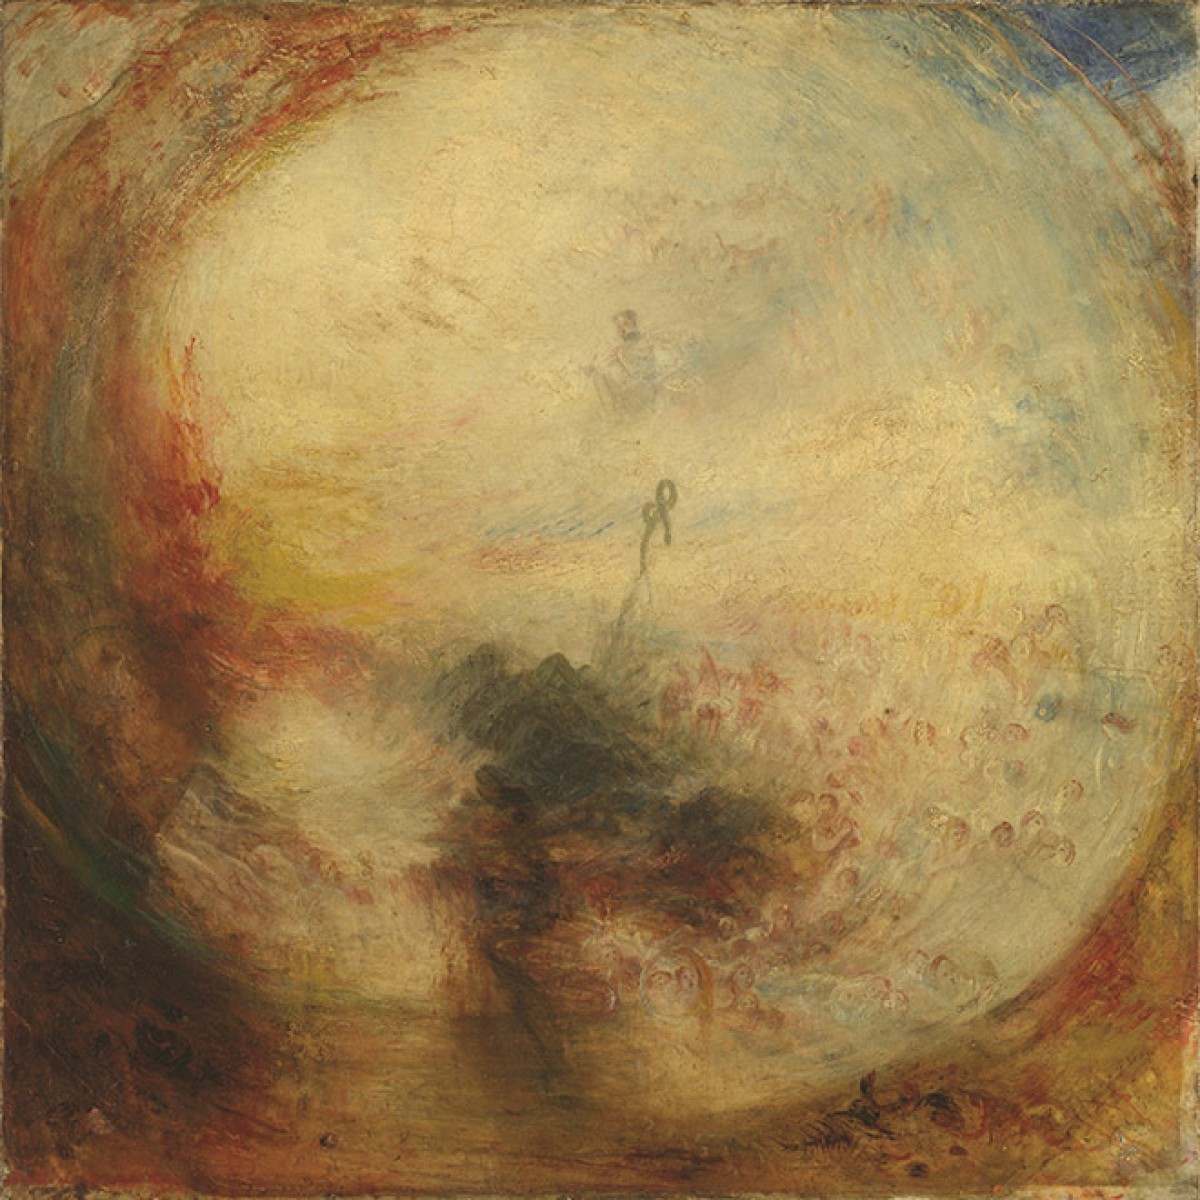 J.M.W. Turner: Painting Set Free | Art Gallery of Ontario